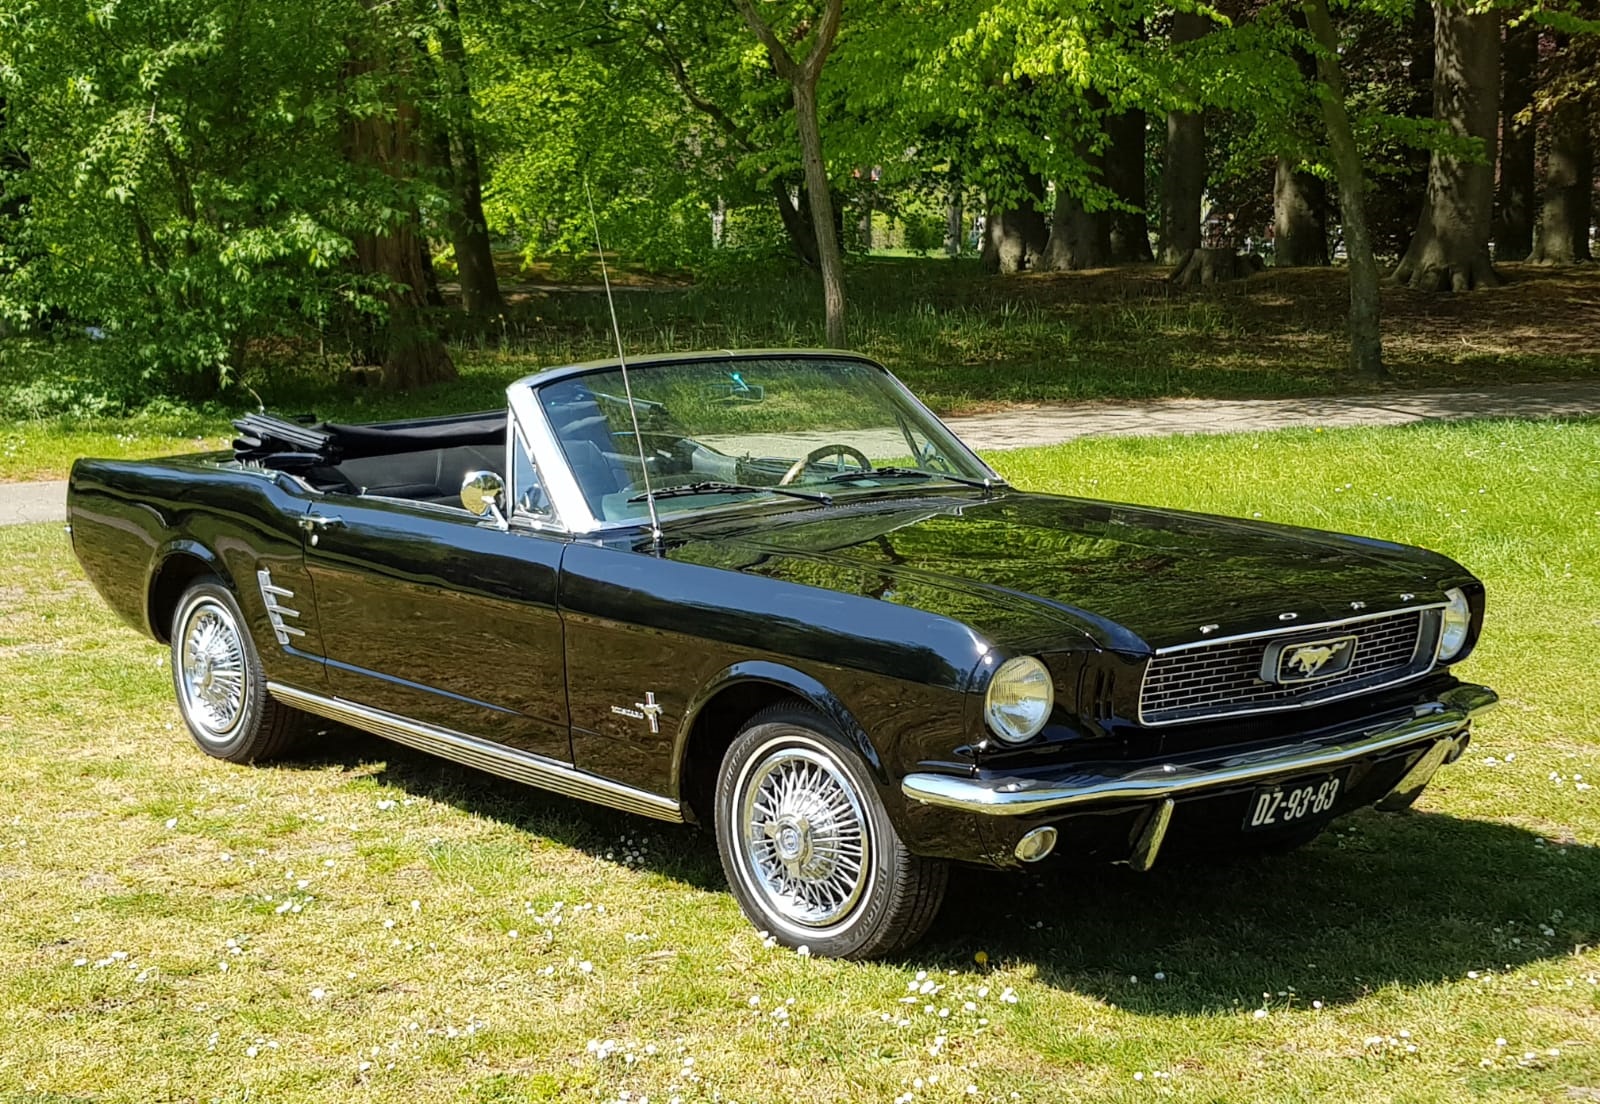 Ford Mustang cabriolet uit 1966 zwart - de Mustang nu snel